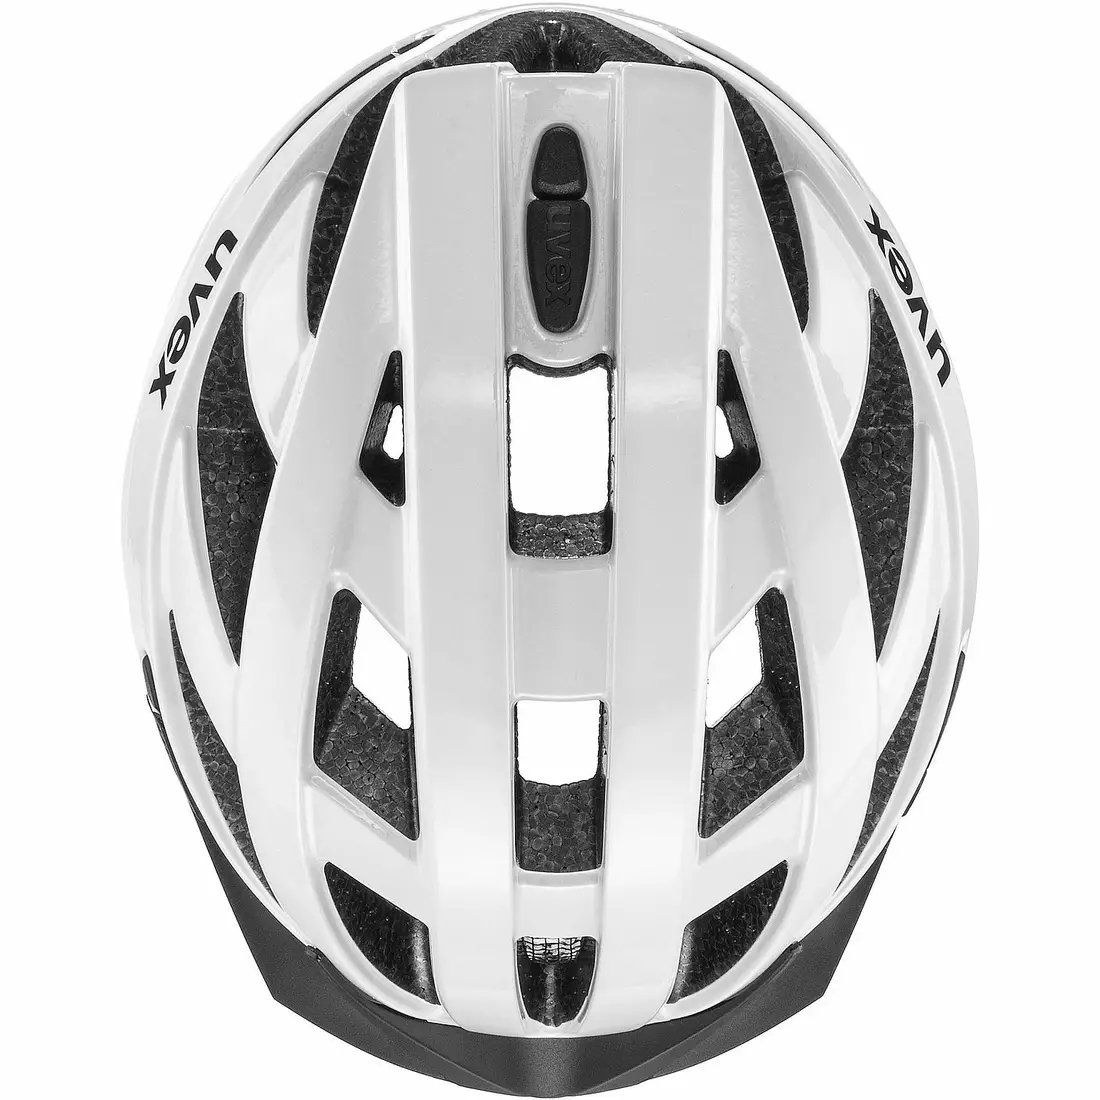 UVEX bike helmet i-vo 3D white 